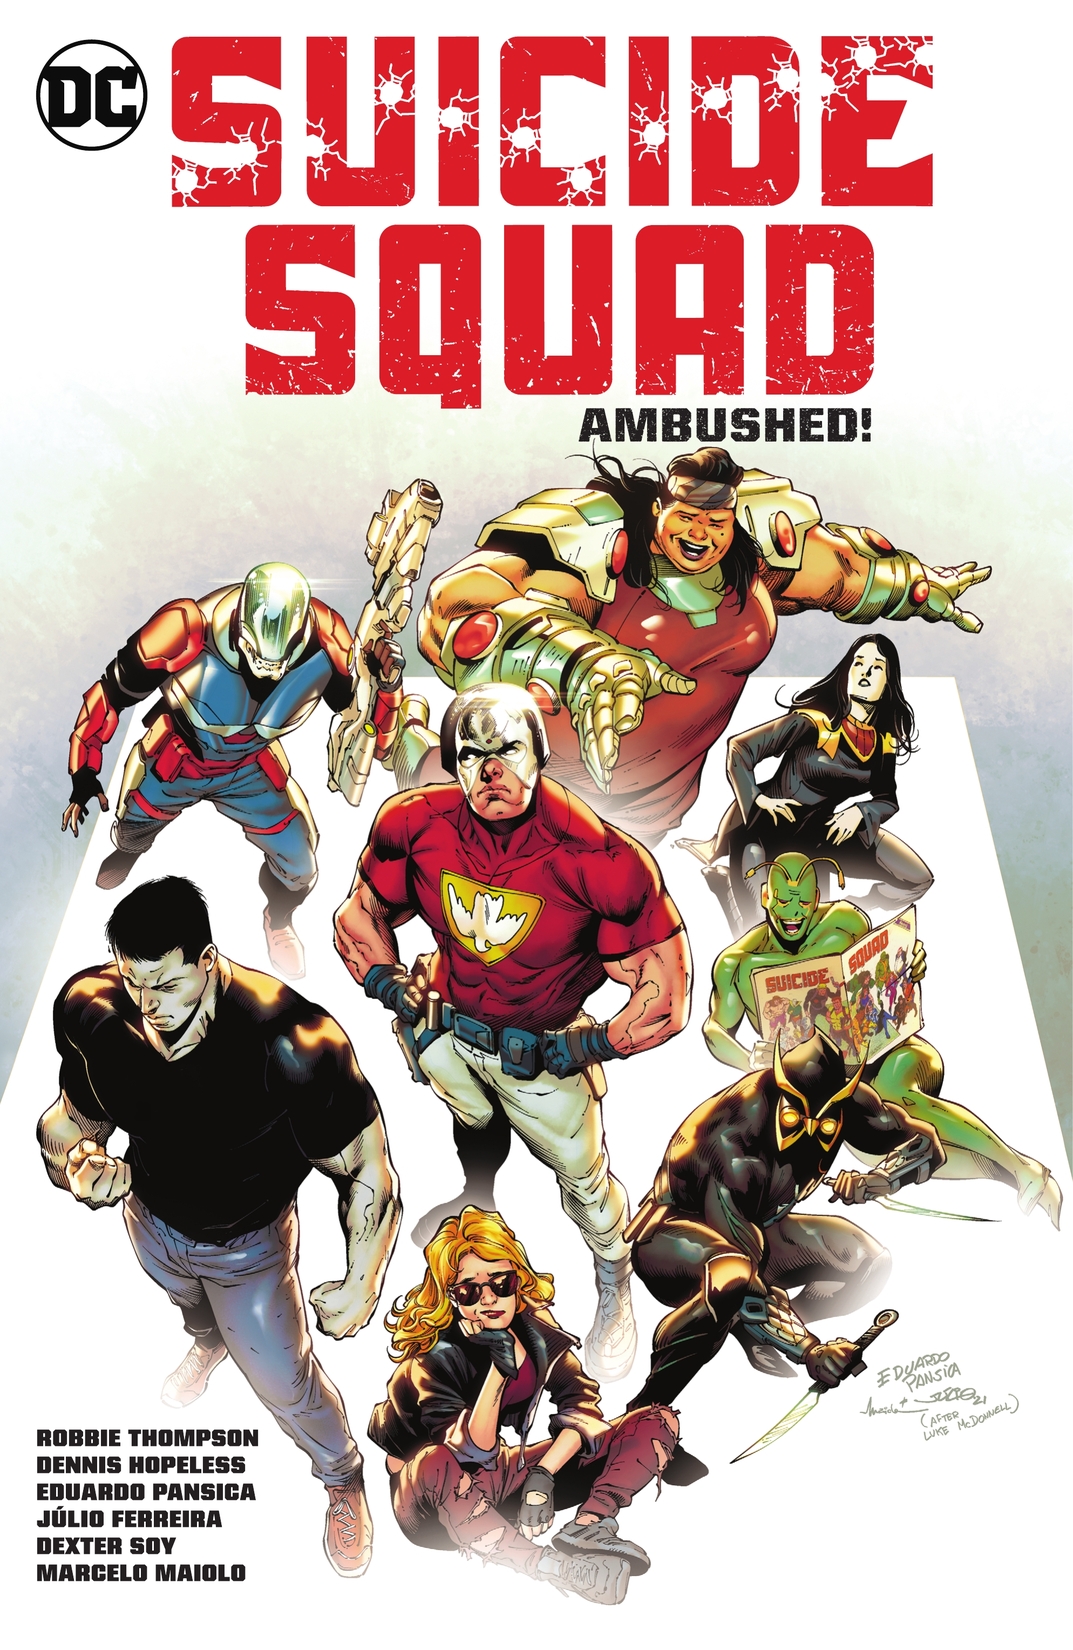 Suicide Squad Vol. 2: Ambushed! preview images